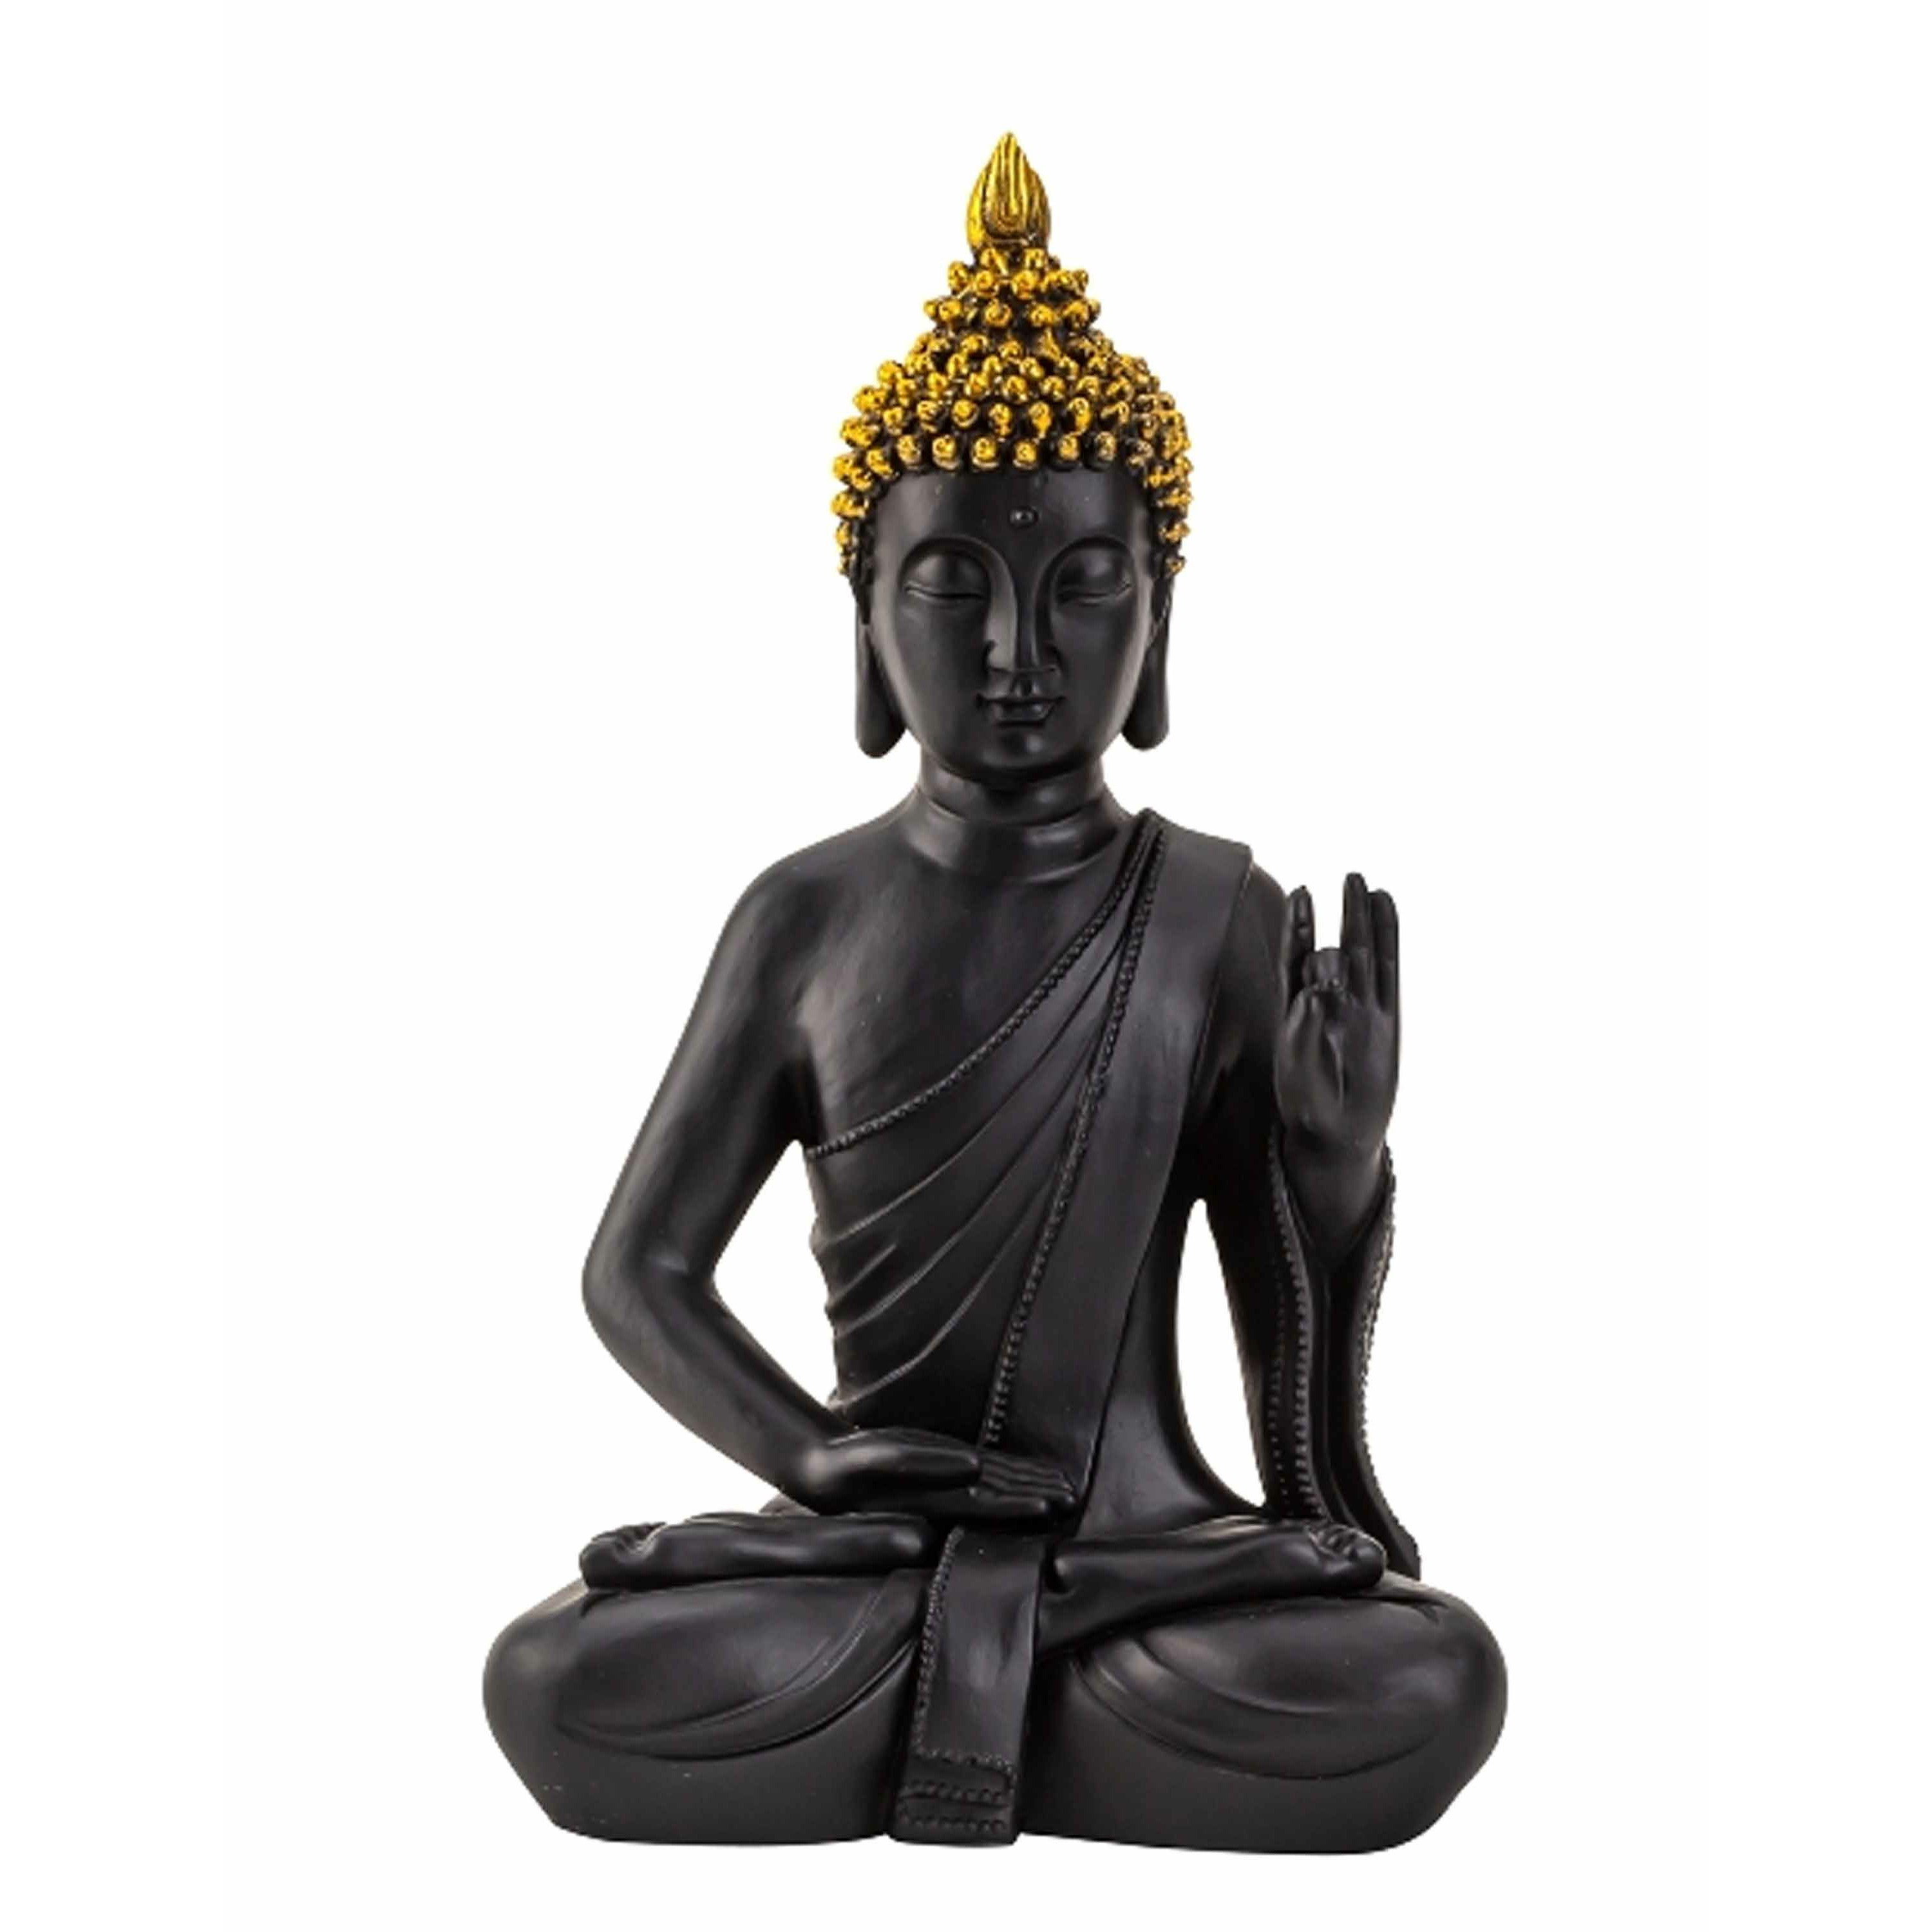 Merkloos Boeddha beeldje zittend - binnen/buiten - kunststeen - zwart/goud - 31 x 18 cm -